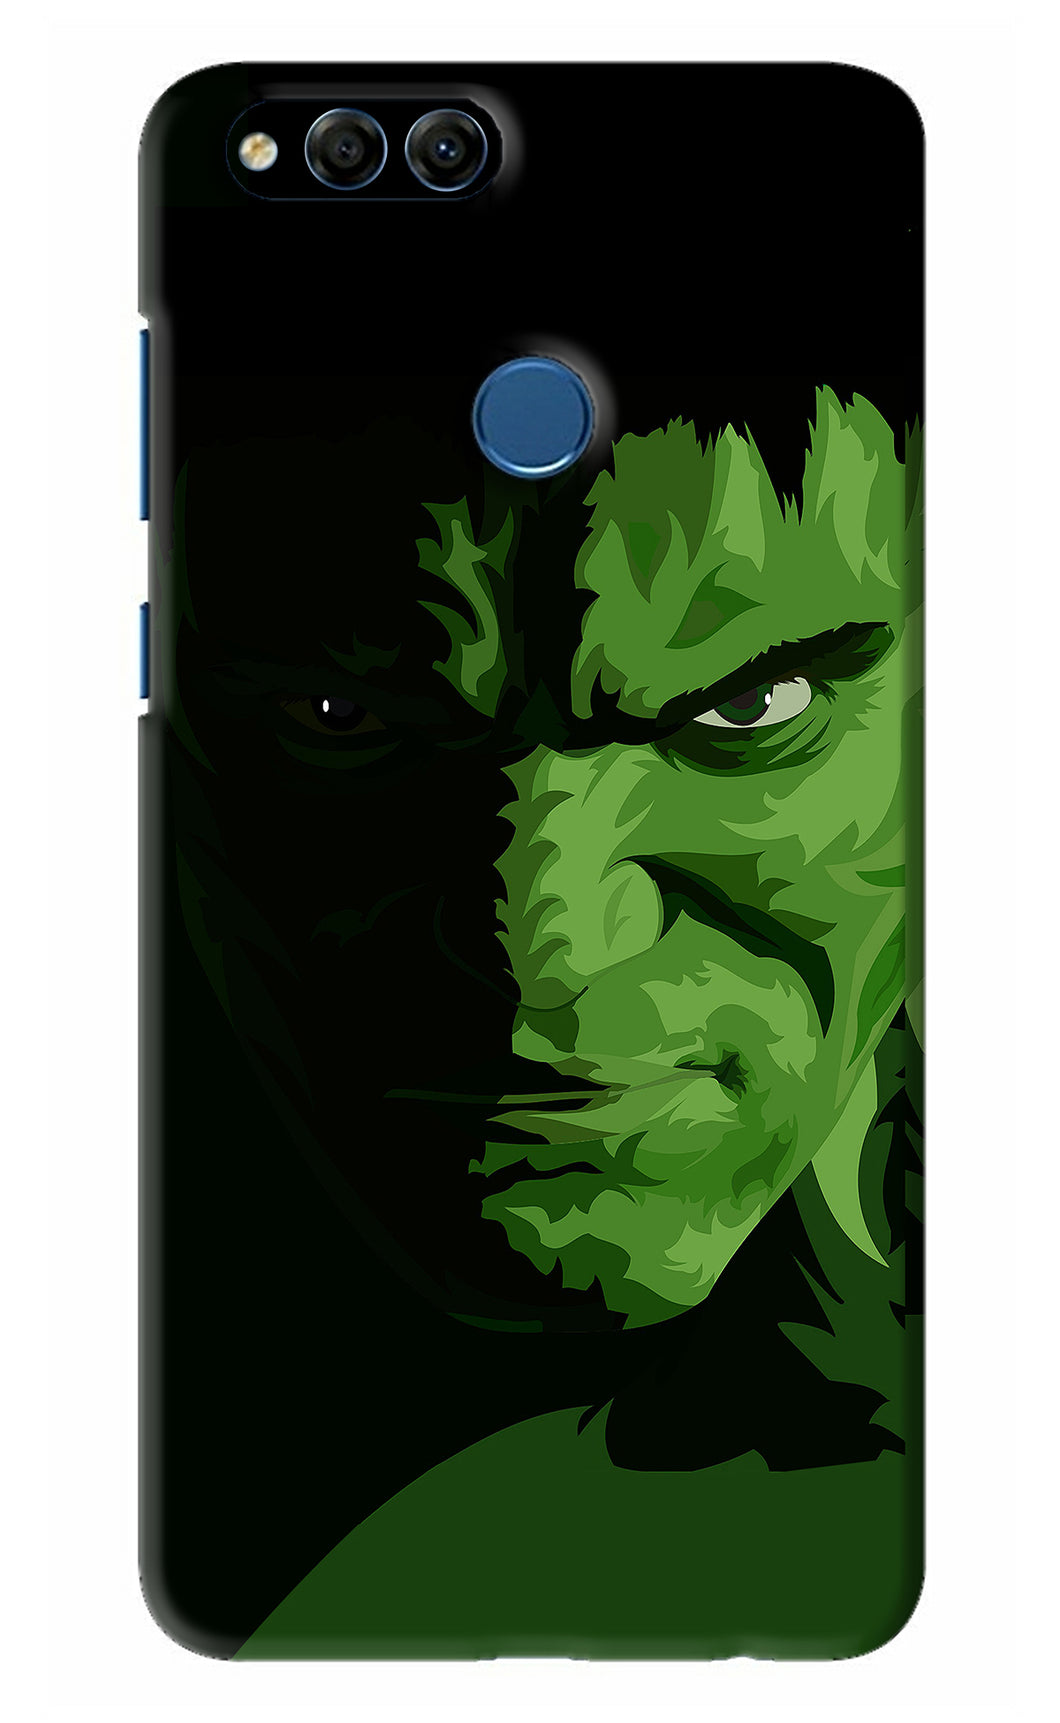 Hulk Huawei Honor 7X Back Skin Wrap